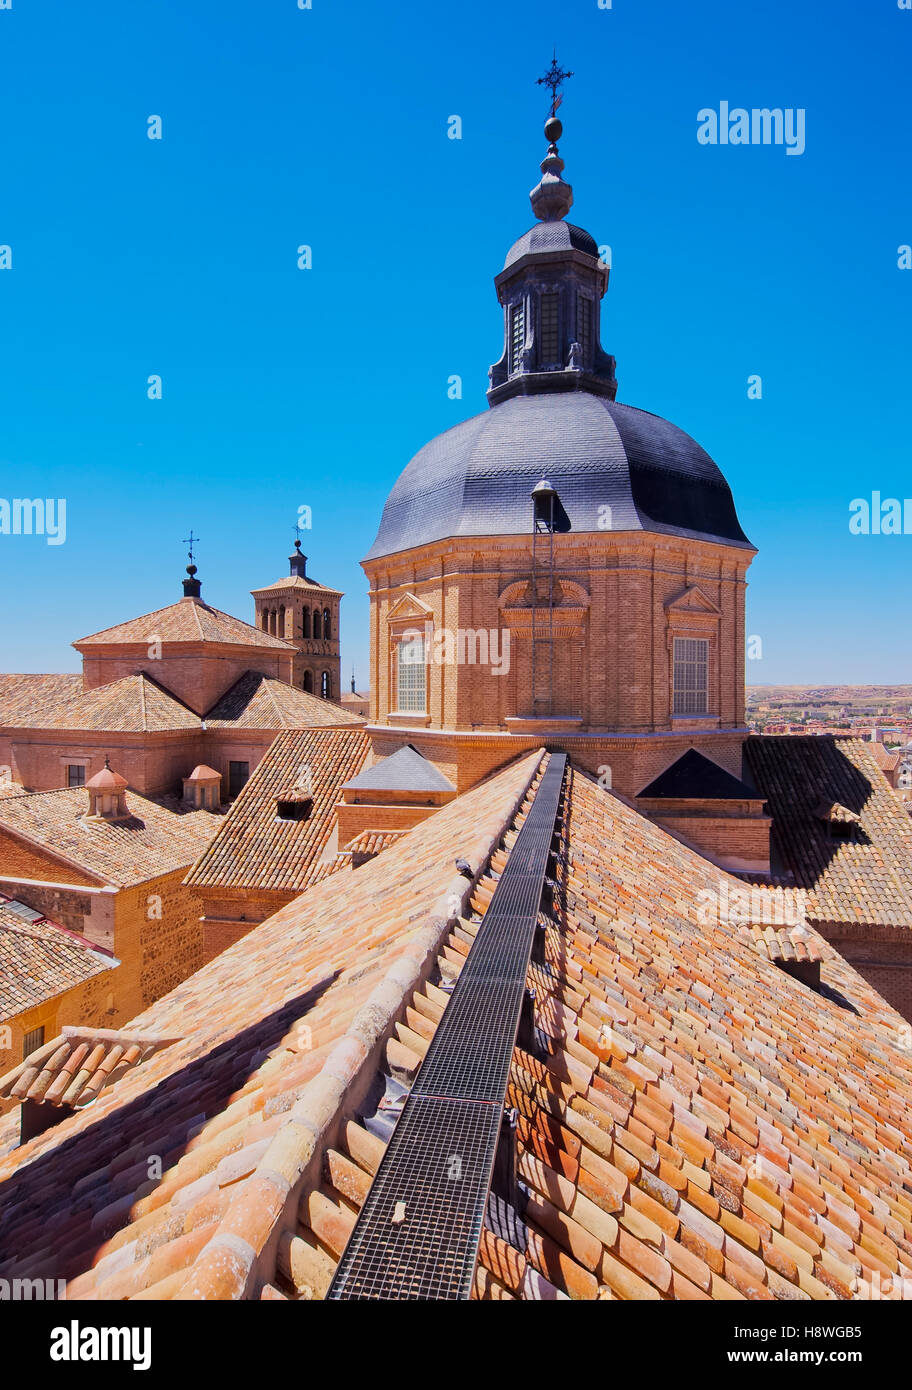 L'Espagne, Castille La Mancha, Toledo, vue de l'église de San Ildefonso. Banque D'Images